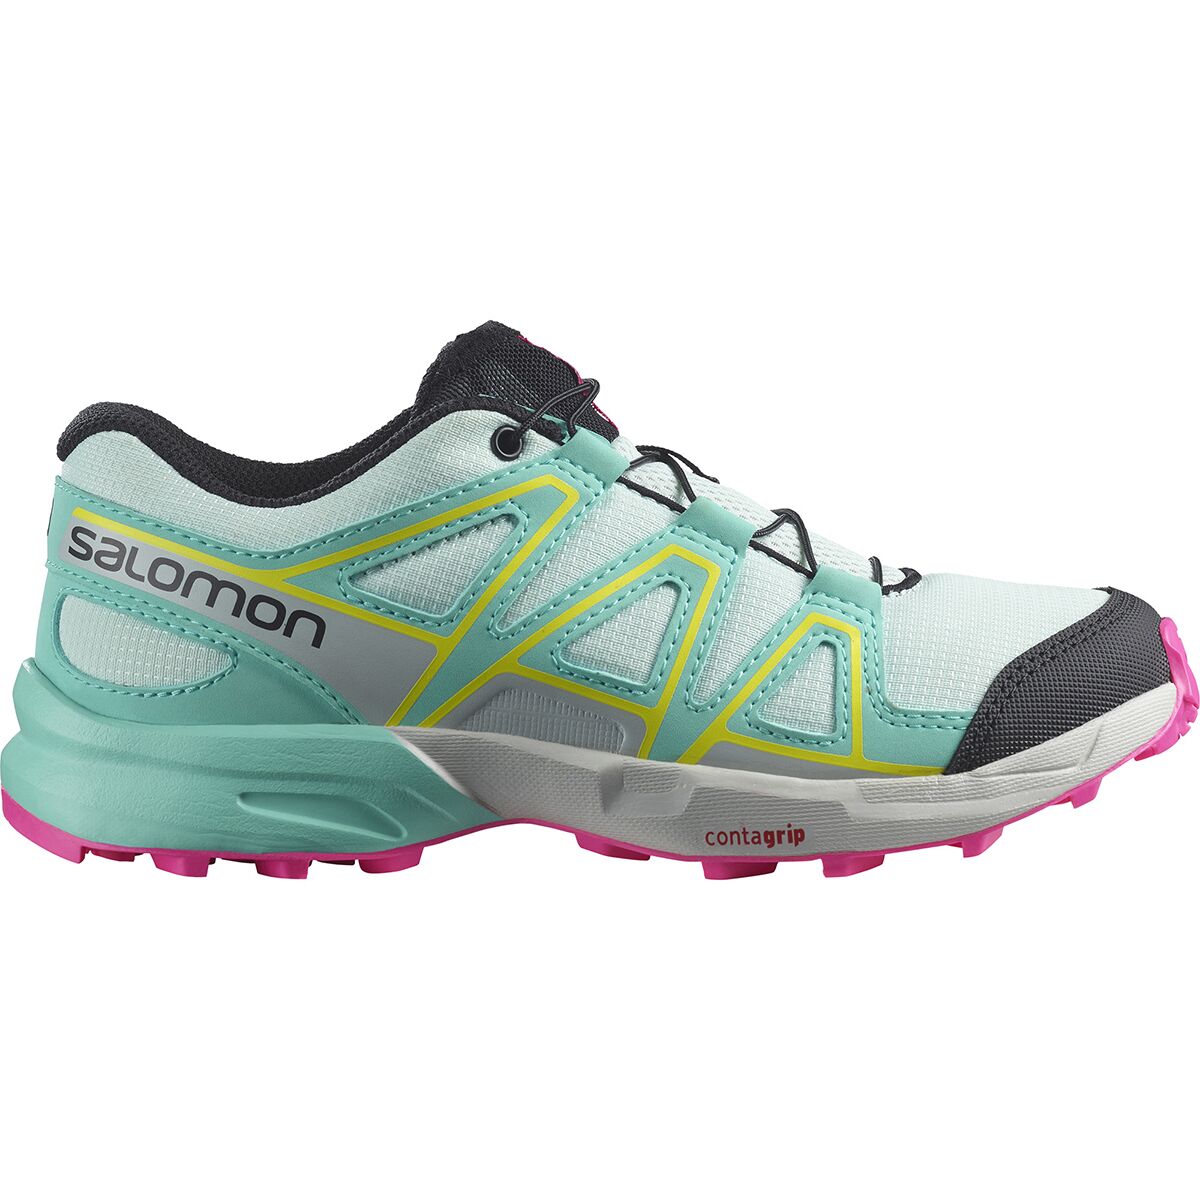 Salomon Speedcross J Hiking Shoe - Girls' -